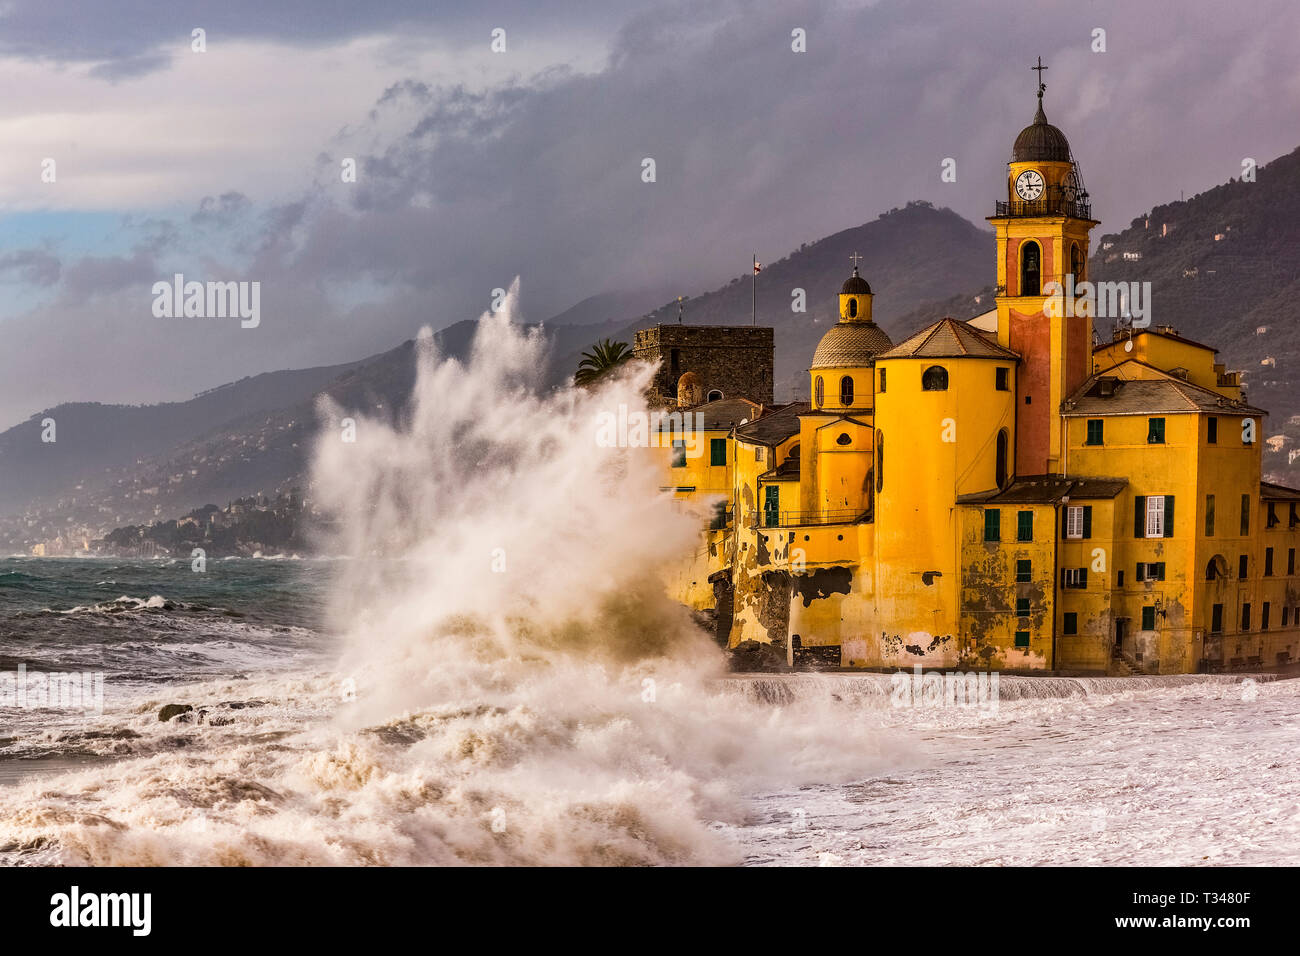 Italie Ligurie Gênes est situé dans la partie orientale de la Ligurie, dans la province de Gênes, et est l'une des plus belles villes de la Ligurie, avec un très suggestif église qui donne sur la mer et avec beaucoup d'ondes de tempête, les vagues s'écraser sur ses murs. Banque D'Images